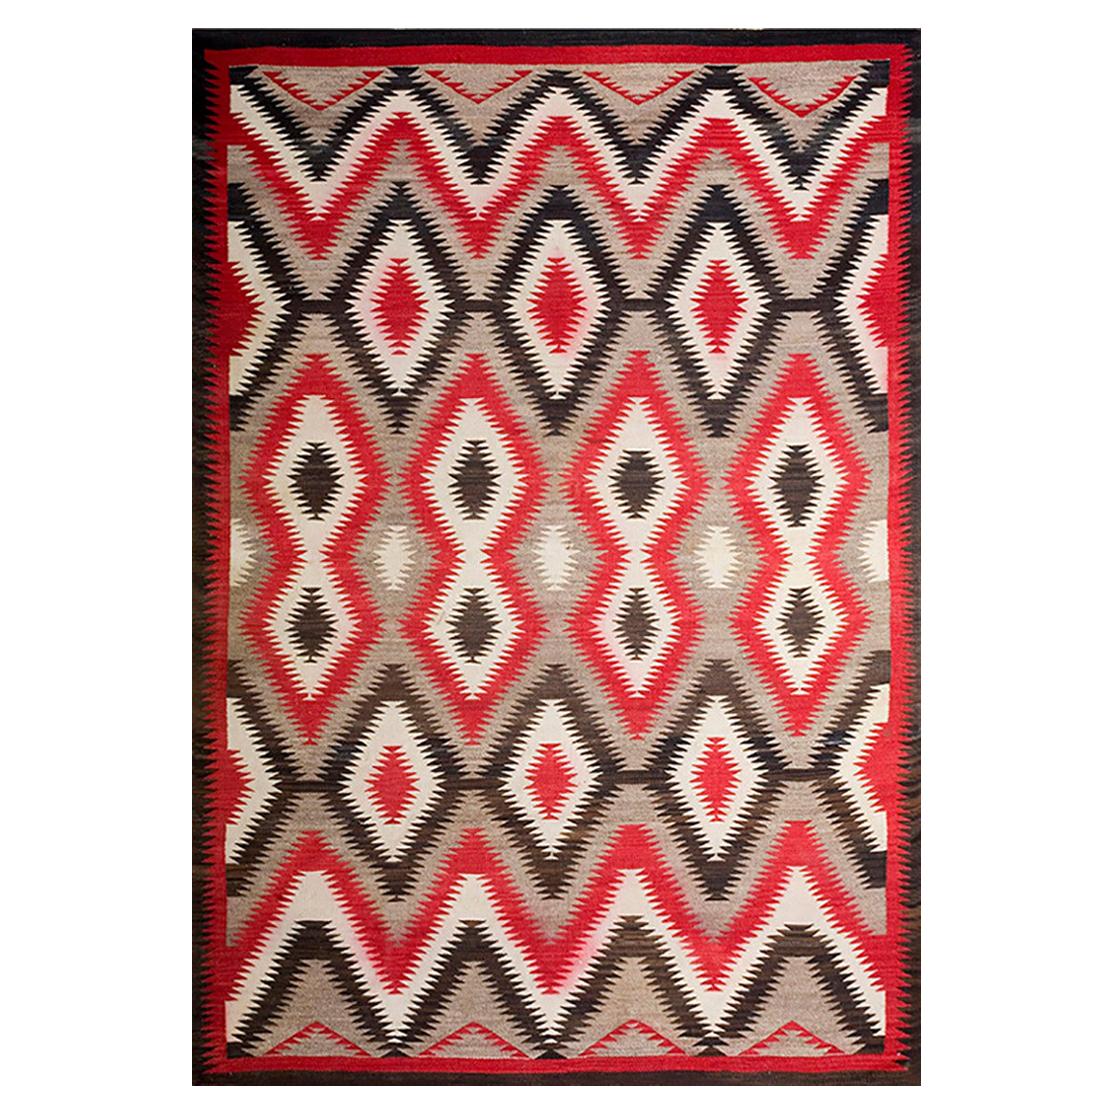 Amerikanischer Navajo-Teppich des frühen 20. Jahrhunderts  ( 6'3" x 9' - 191 x 275 )